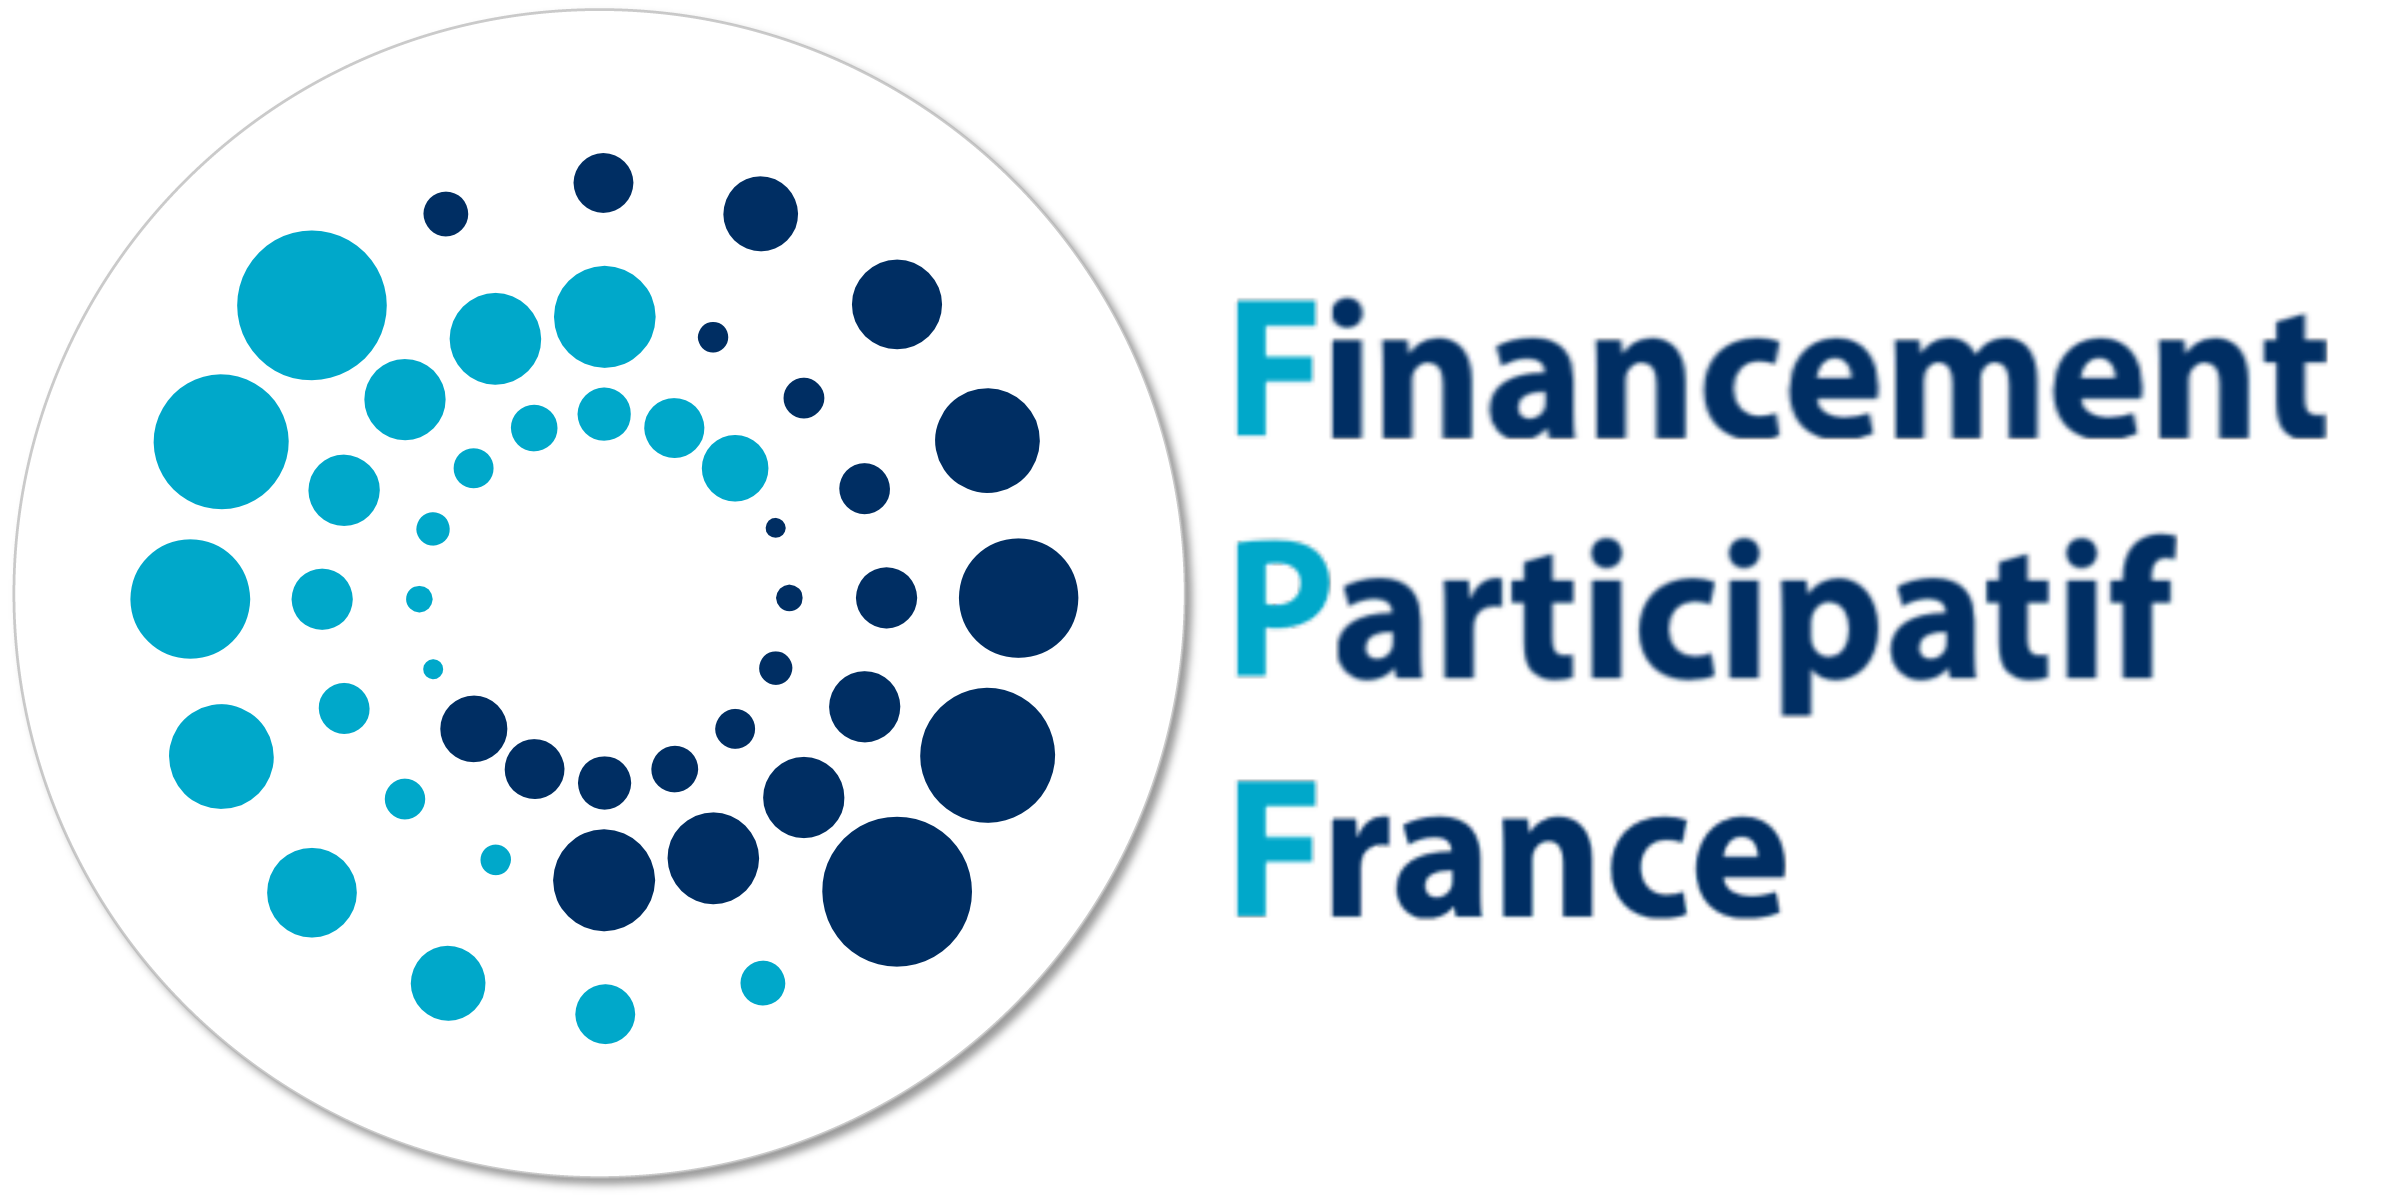 Financement participatif france "